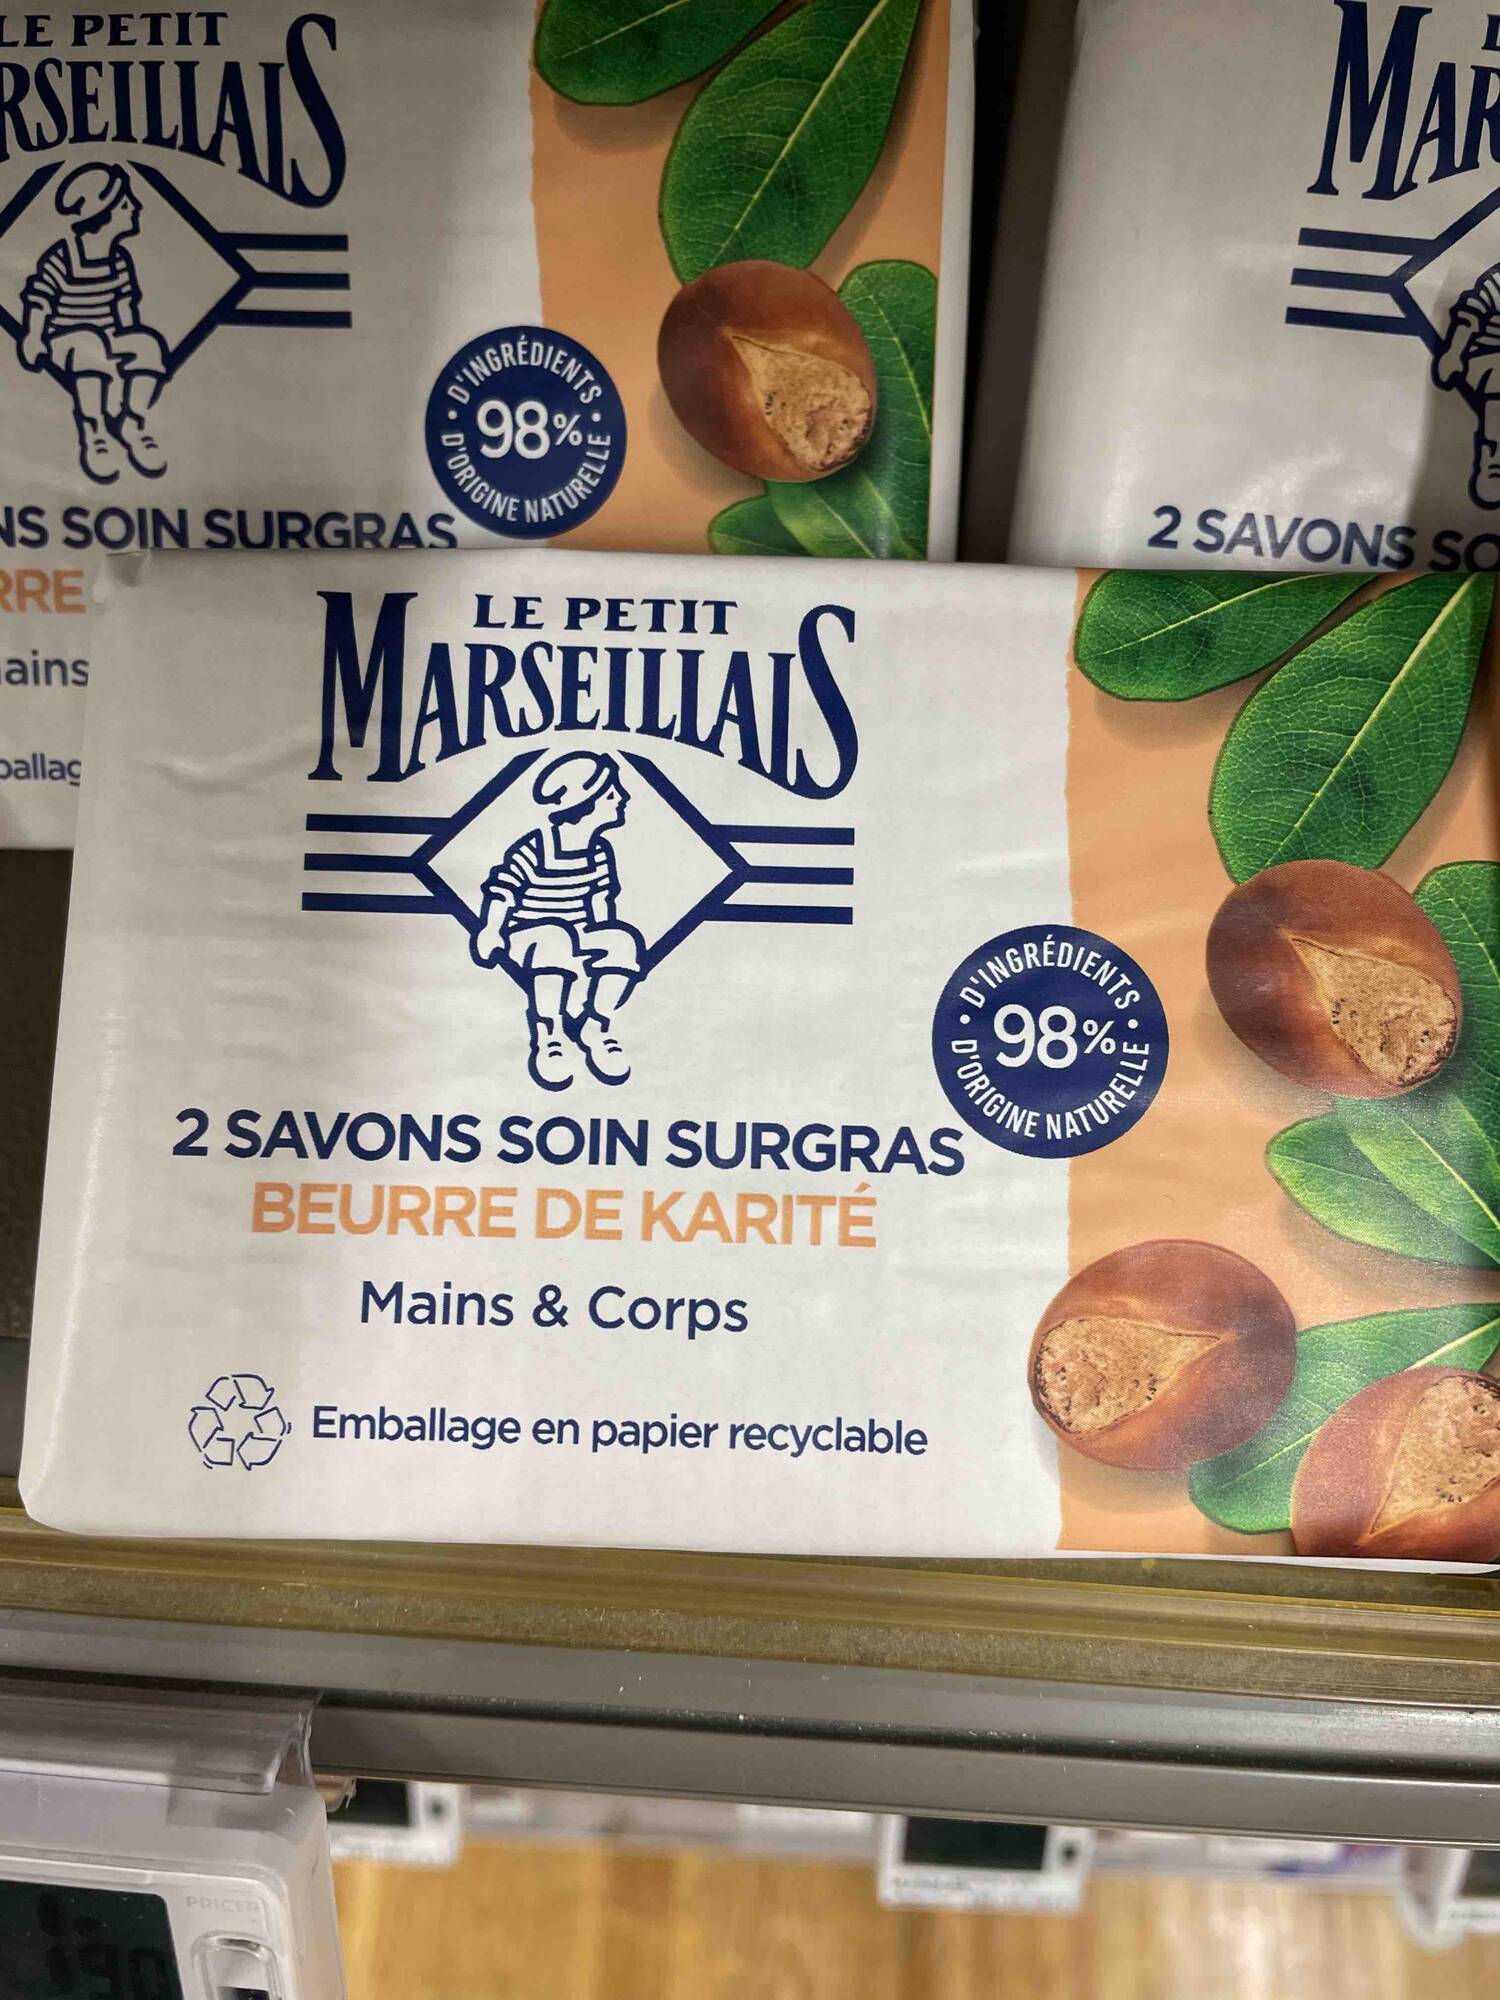 LE PETIT MARSEILLAIS - Beurre de karité - Savon soin surgras 